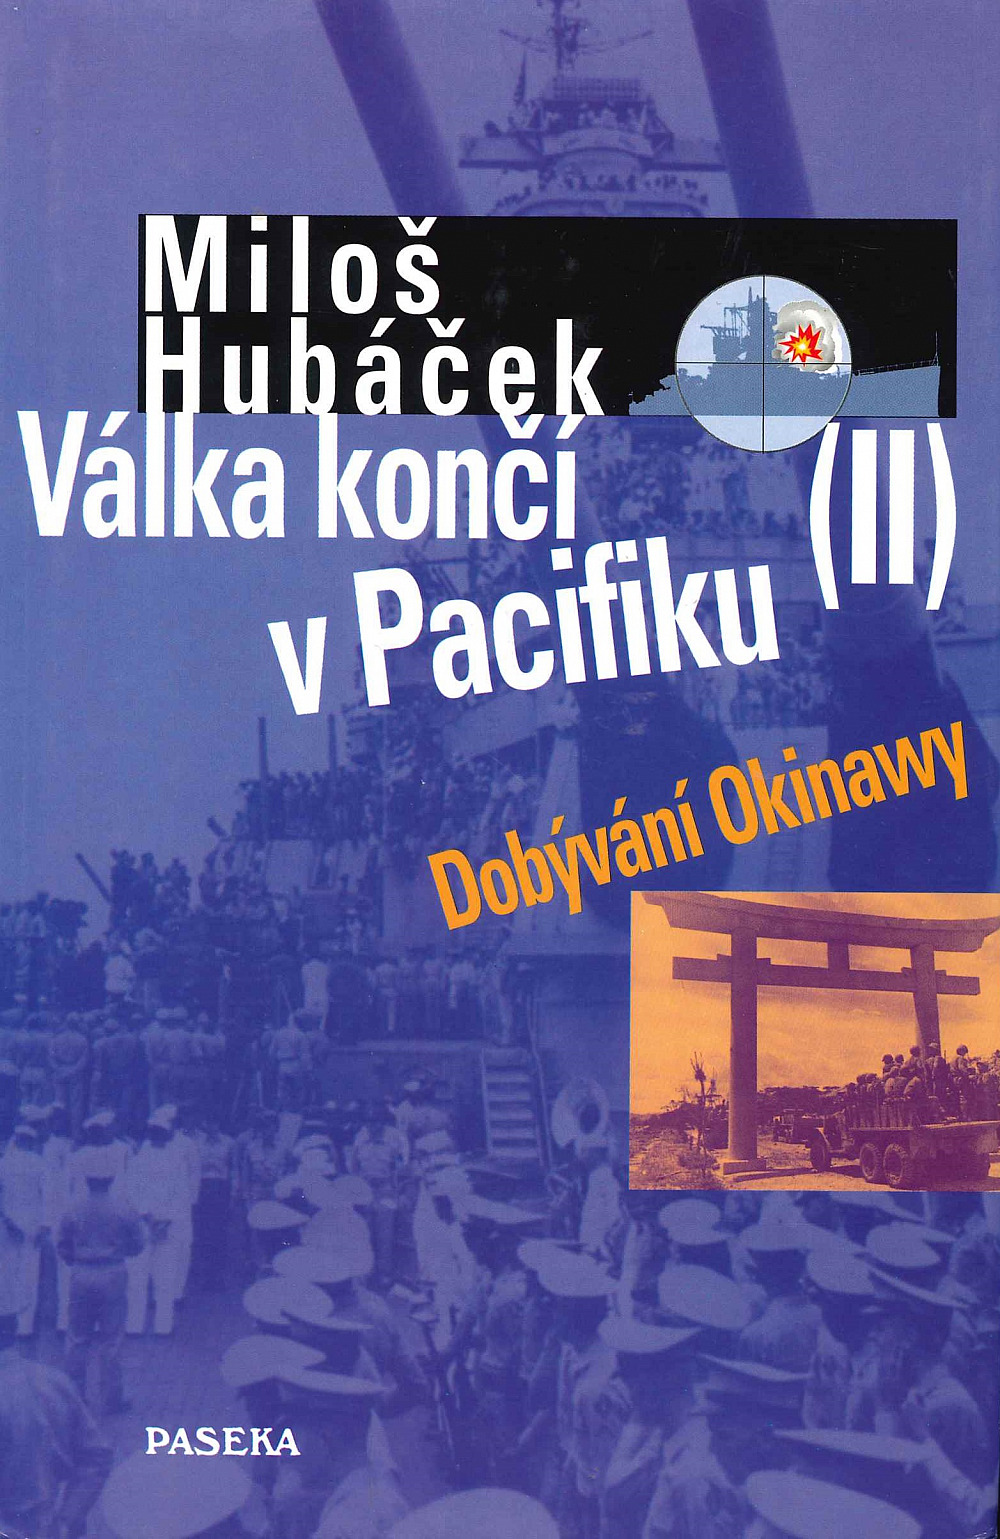 Válka končí v Pacifiku II – Dobývání Okinawy